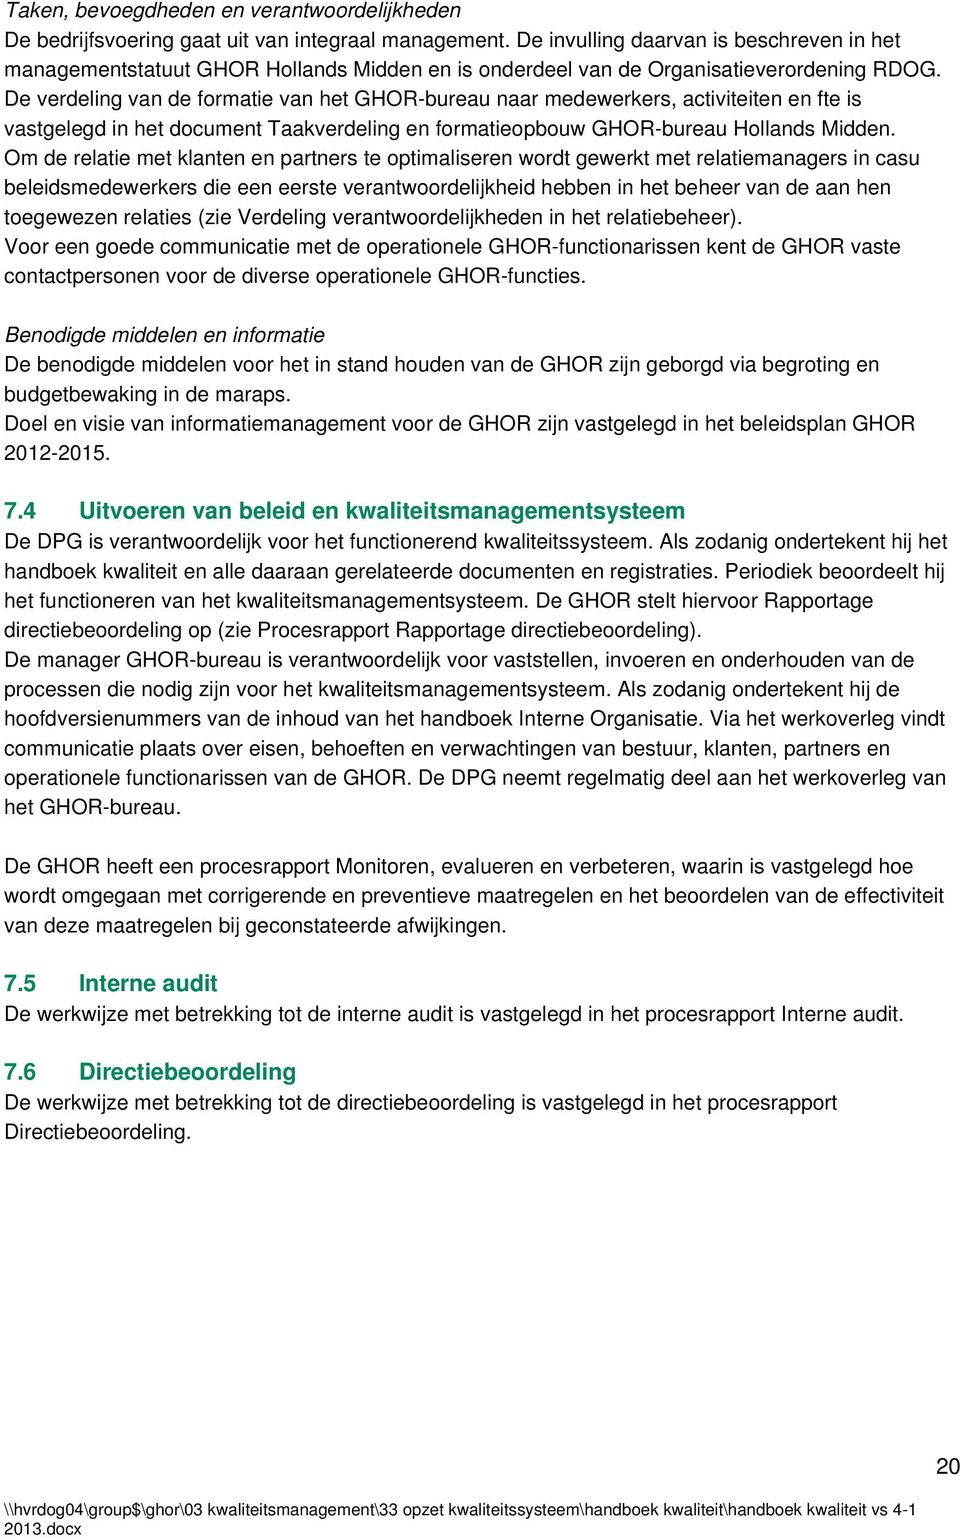 De verdeling van de formatie van het GHOR-bureau naar medewerkers, activiteiten en fte is vastgelegd in het document Taakverdeling en formatieopbouw GHOR-bureau Hollands Midden.